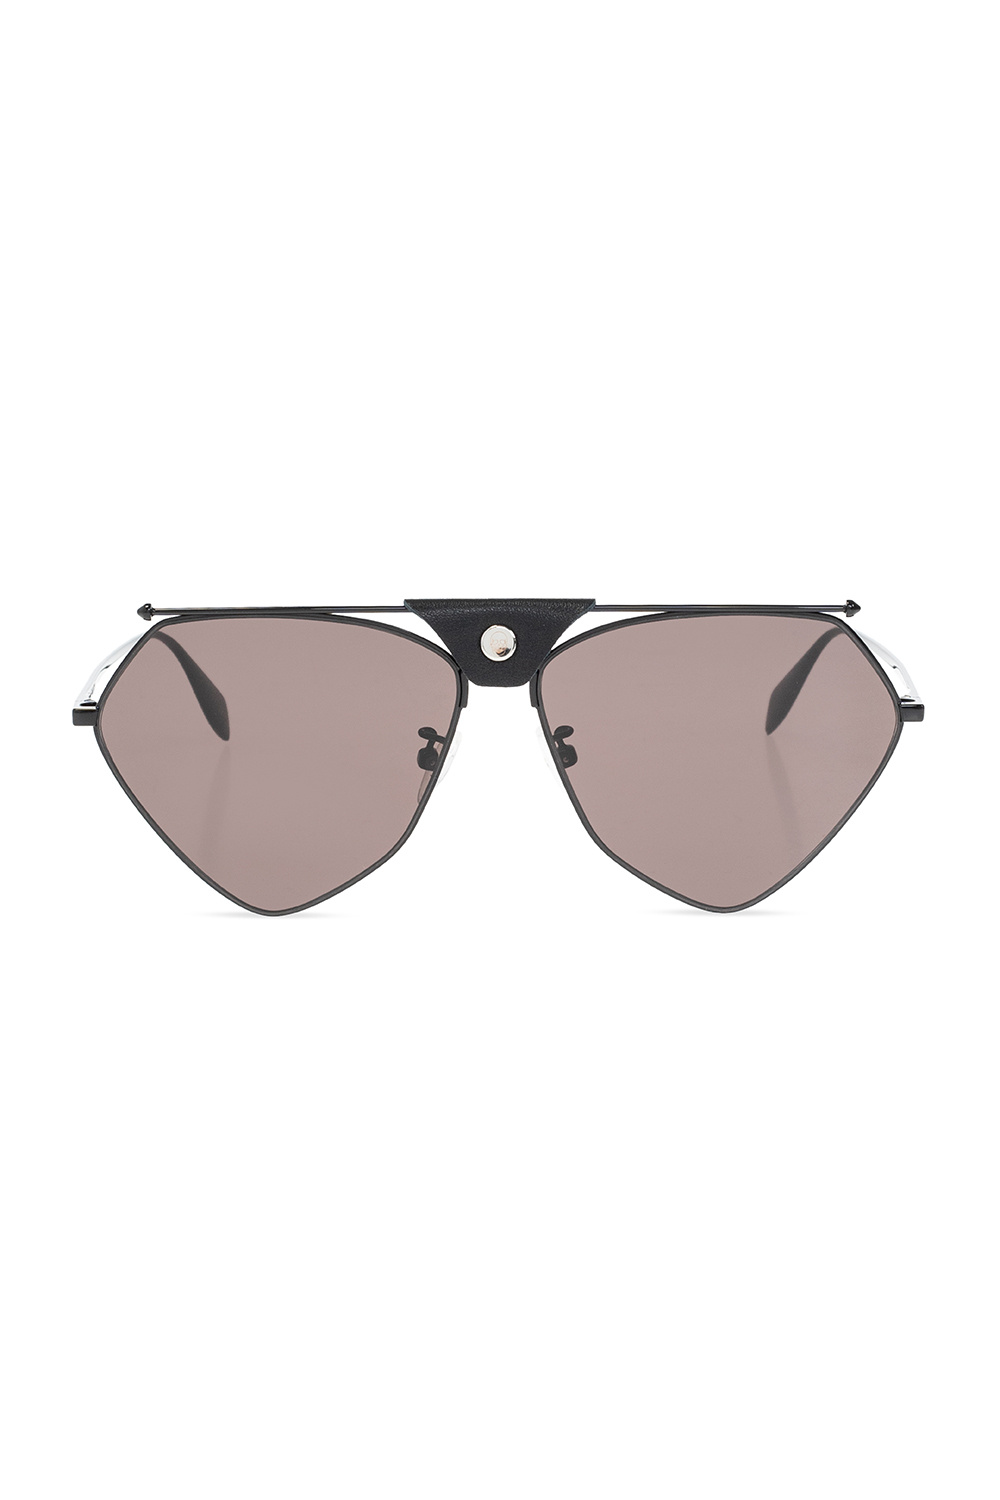 Alexander McQueen BR0093S 001 sunglasses